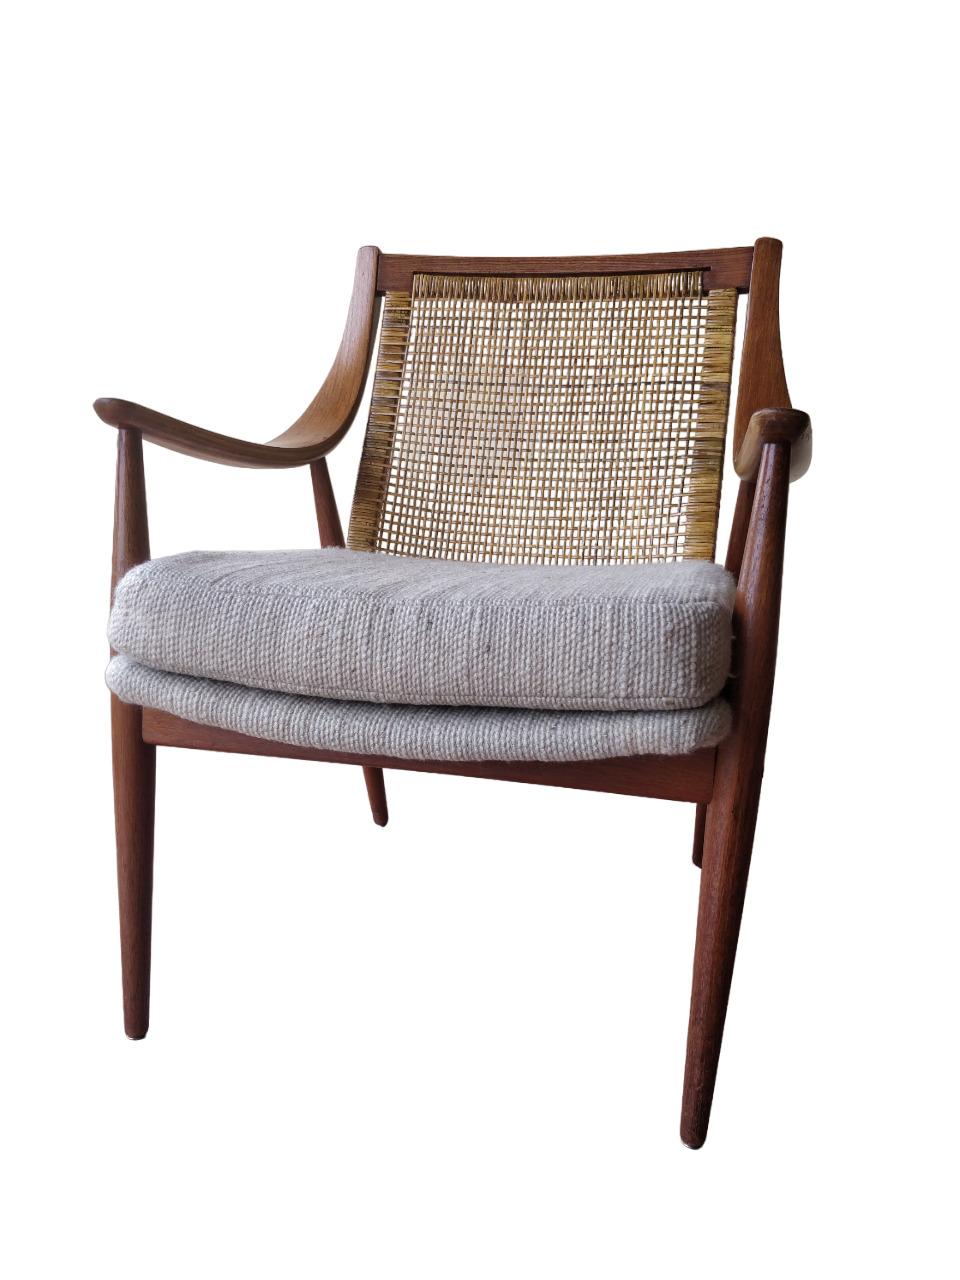 Rotin Rare fauteuil Mod. 147 Peter Hvidt & Orla Molgaard-Nielsen pour France & Søn en vente